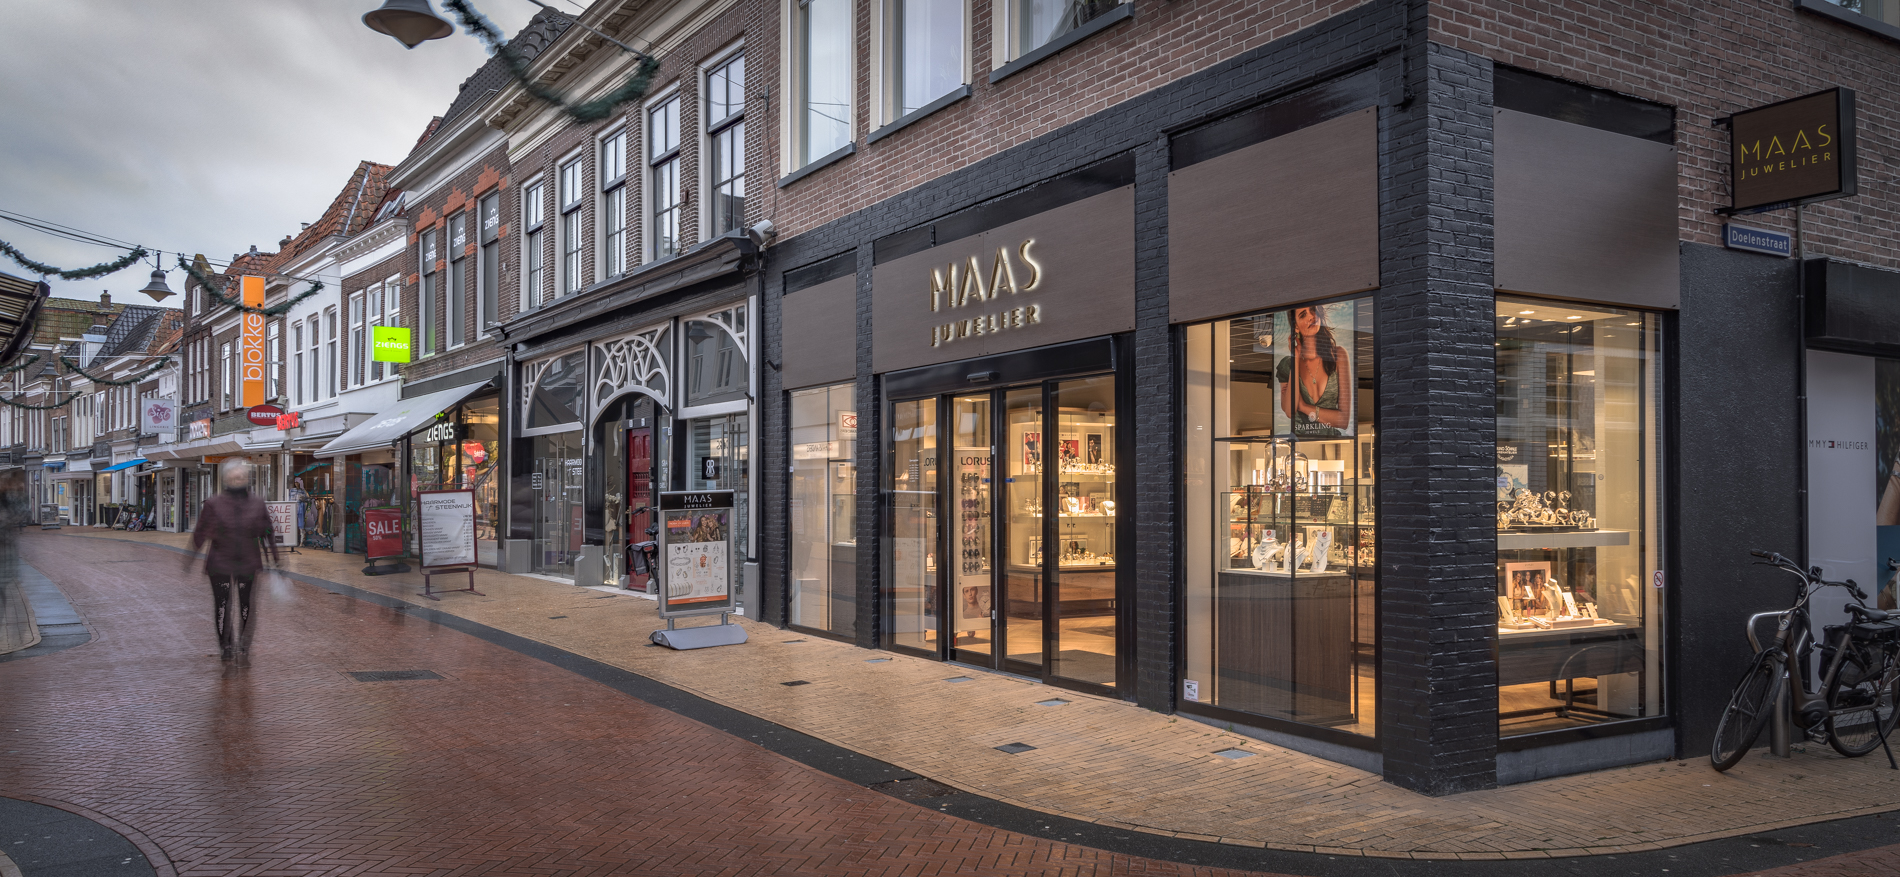 Juwelier Maas | Steenwijk (NL) - Schmuck